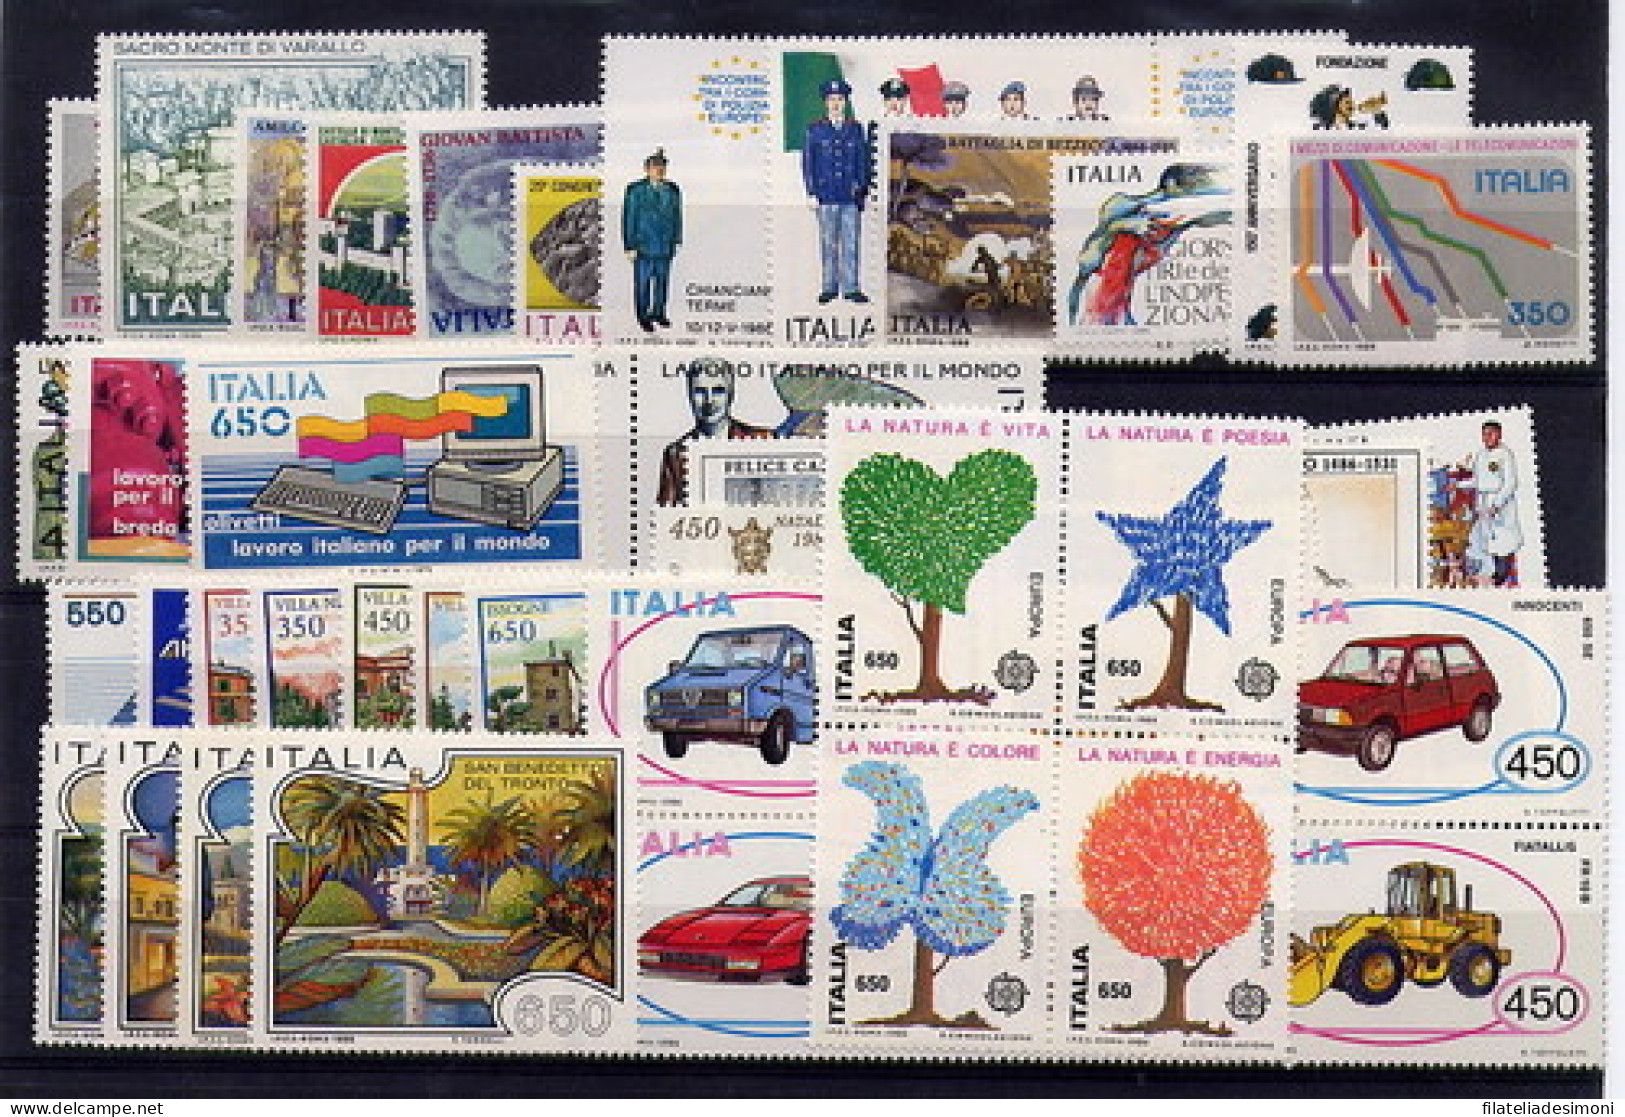 1980-1989 Italia Repubblica, Annate Complete OFFERTA SPECIALE, francobolli nuovi - MNH**